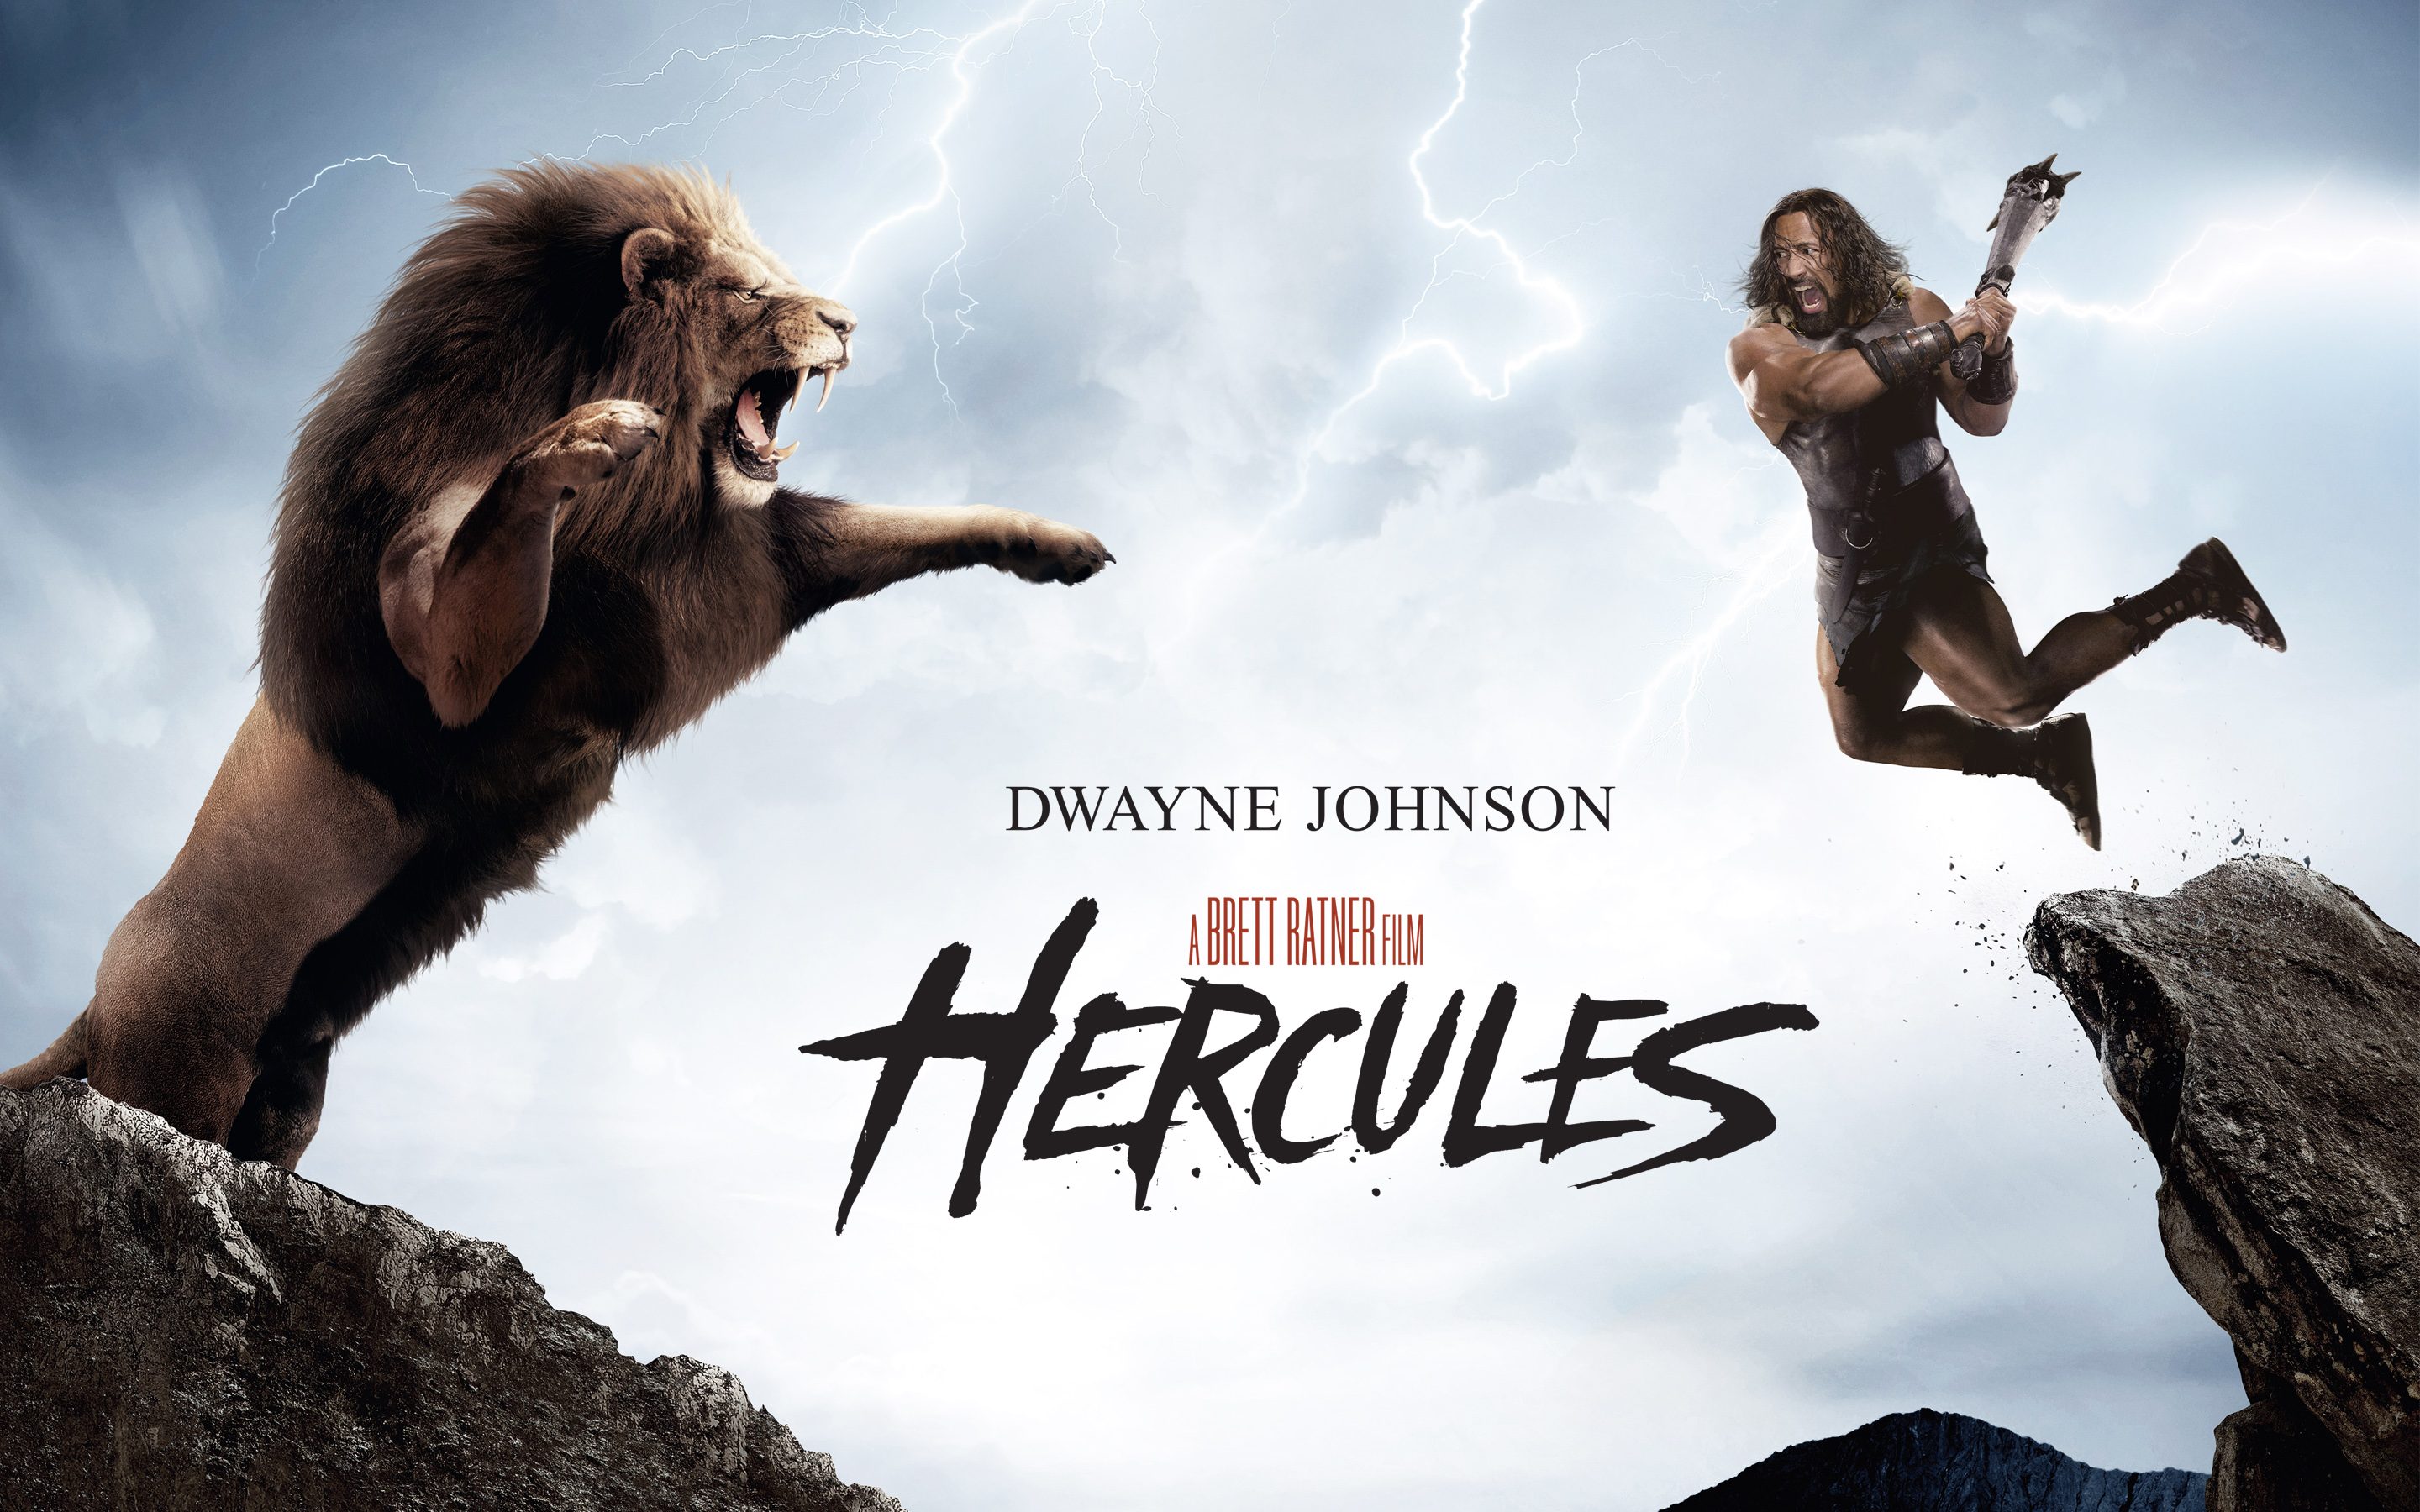 Dwayne Johnson’s Hercules